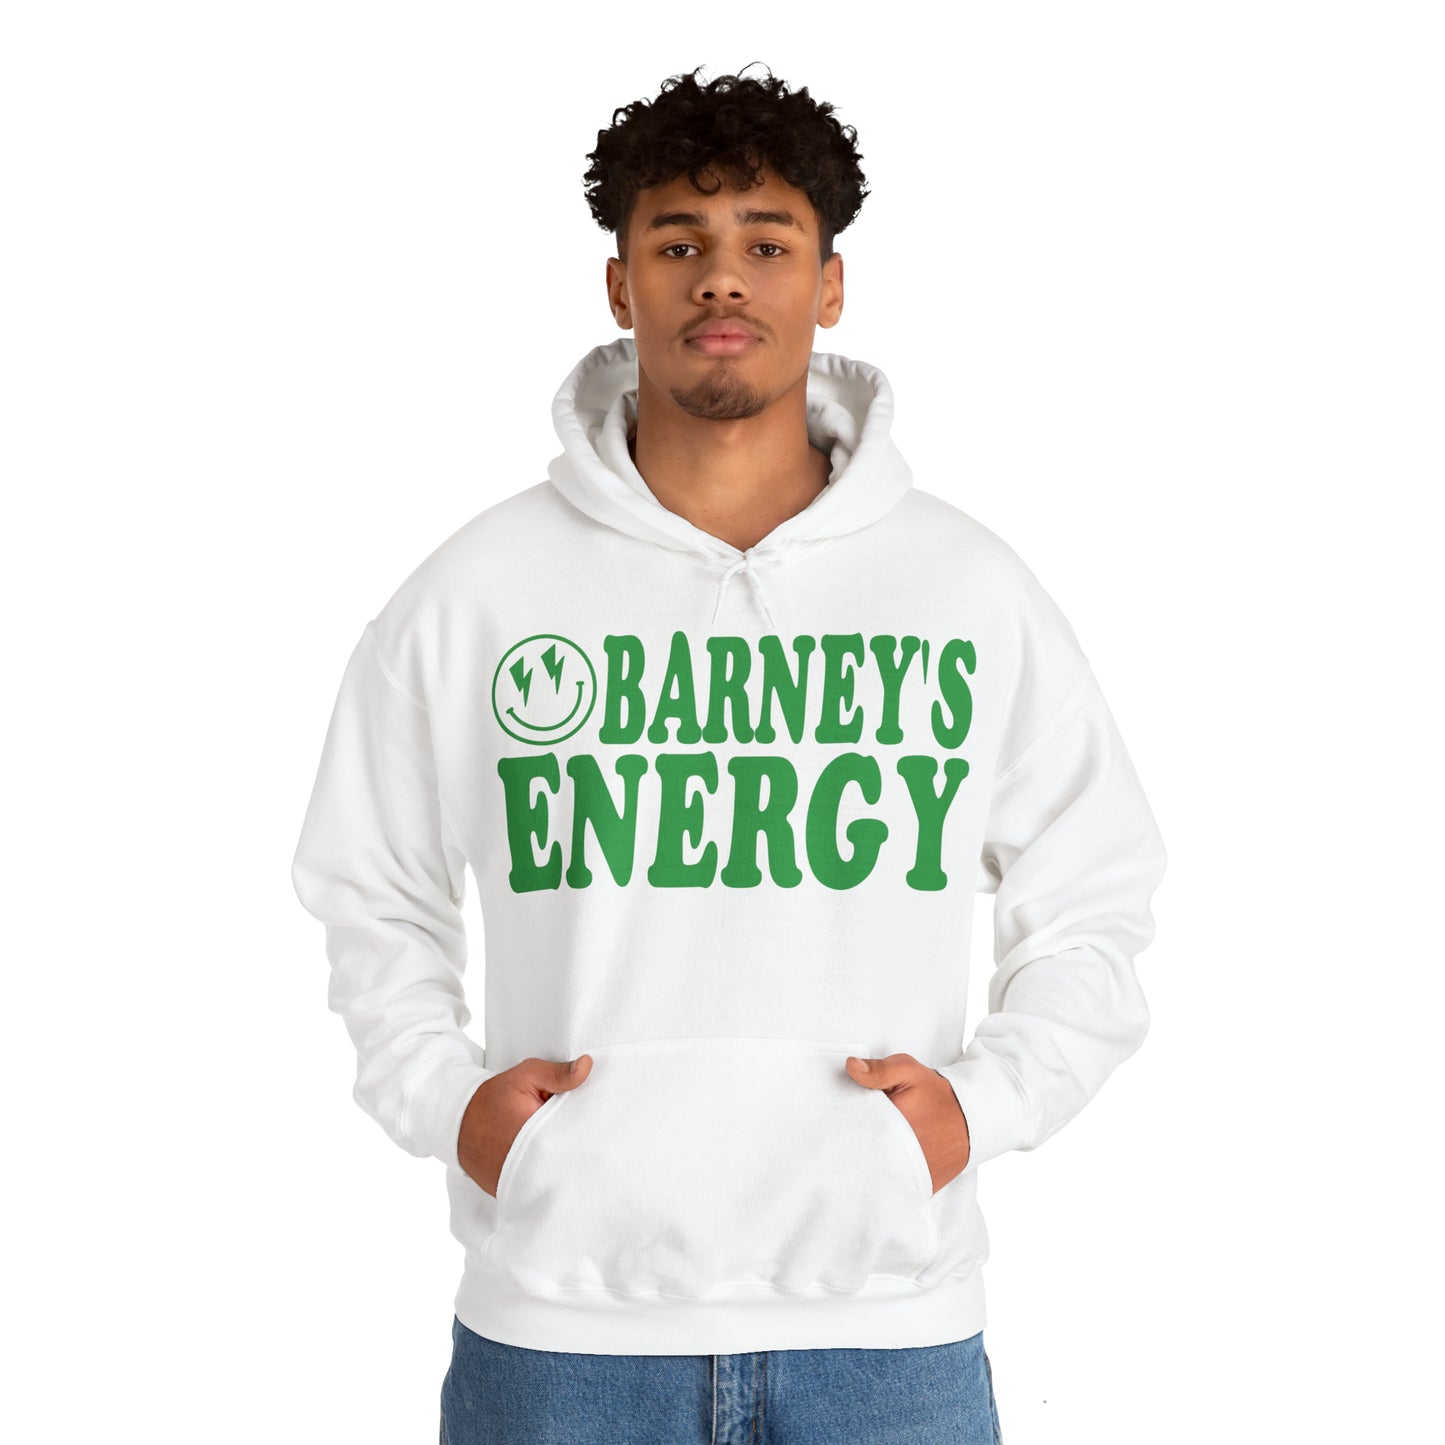 Barney's Energy | BARNEY'S BEANERY - Men's Smiley Face Hoodie